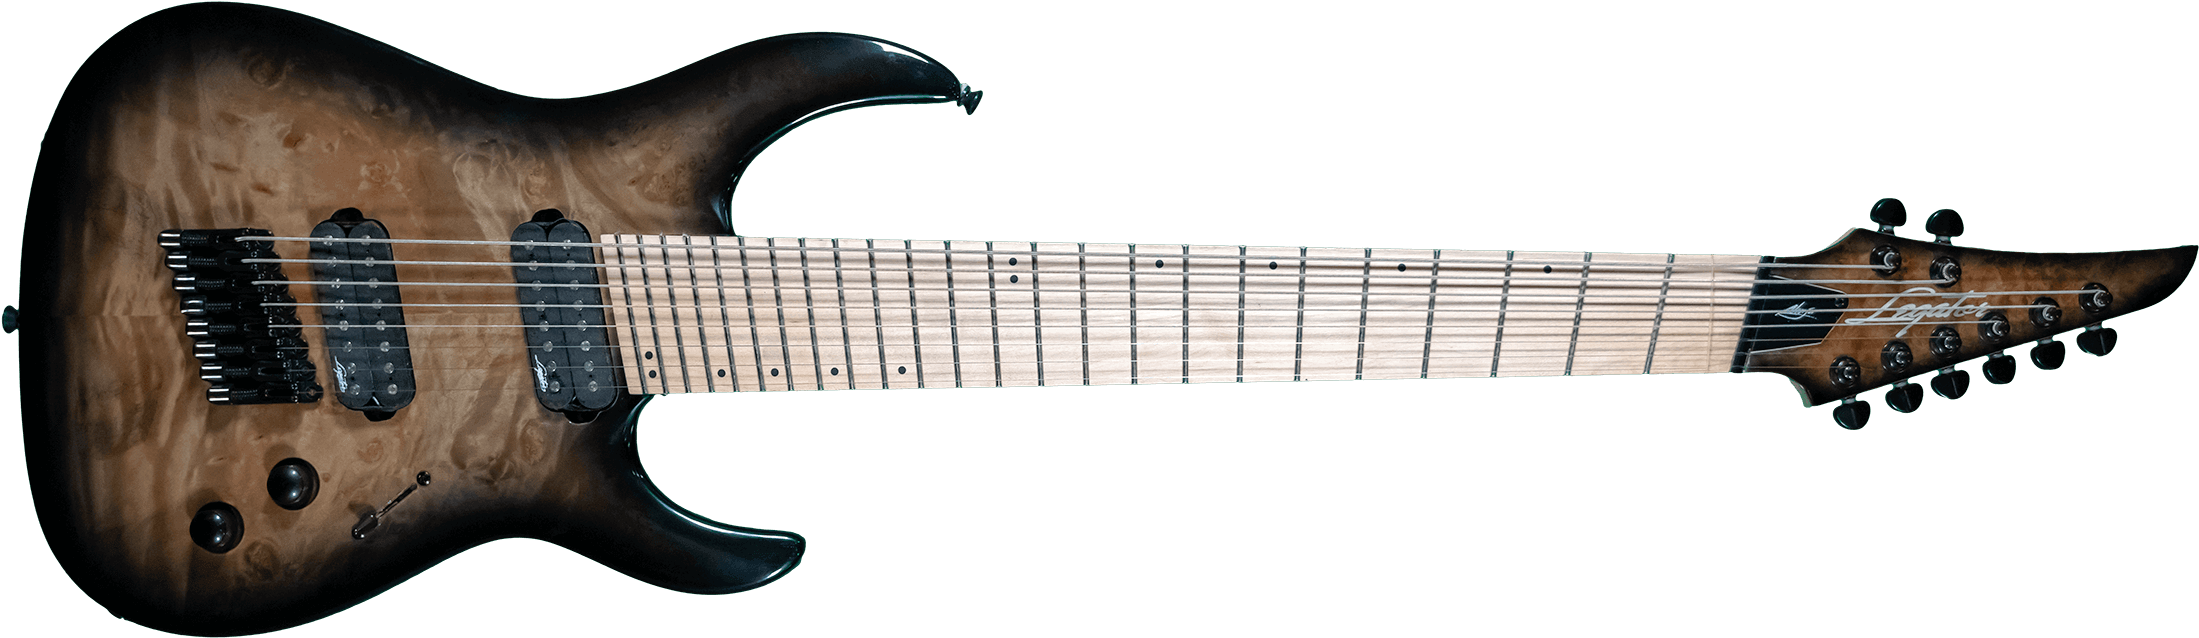 Ninja - Cort 7 String Guitar (2386x1342), Png Download